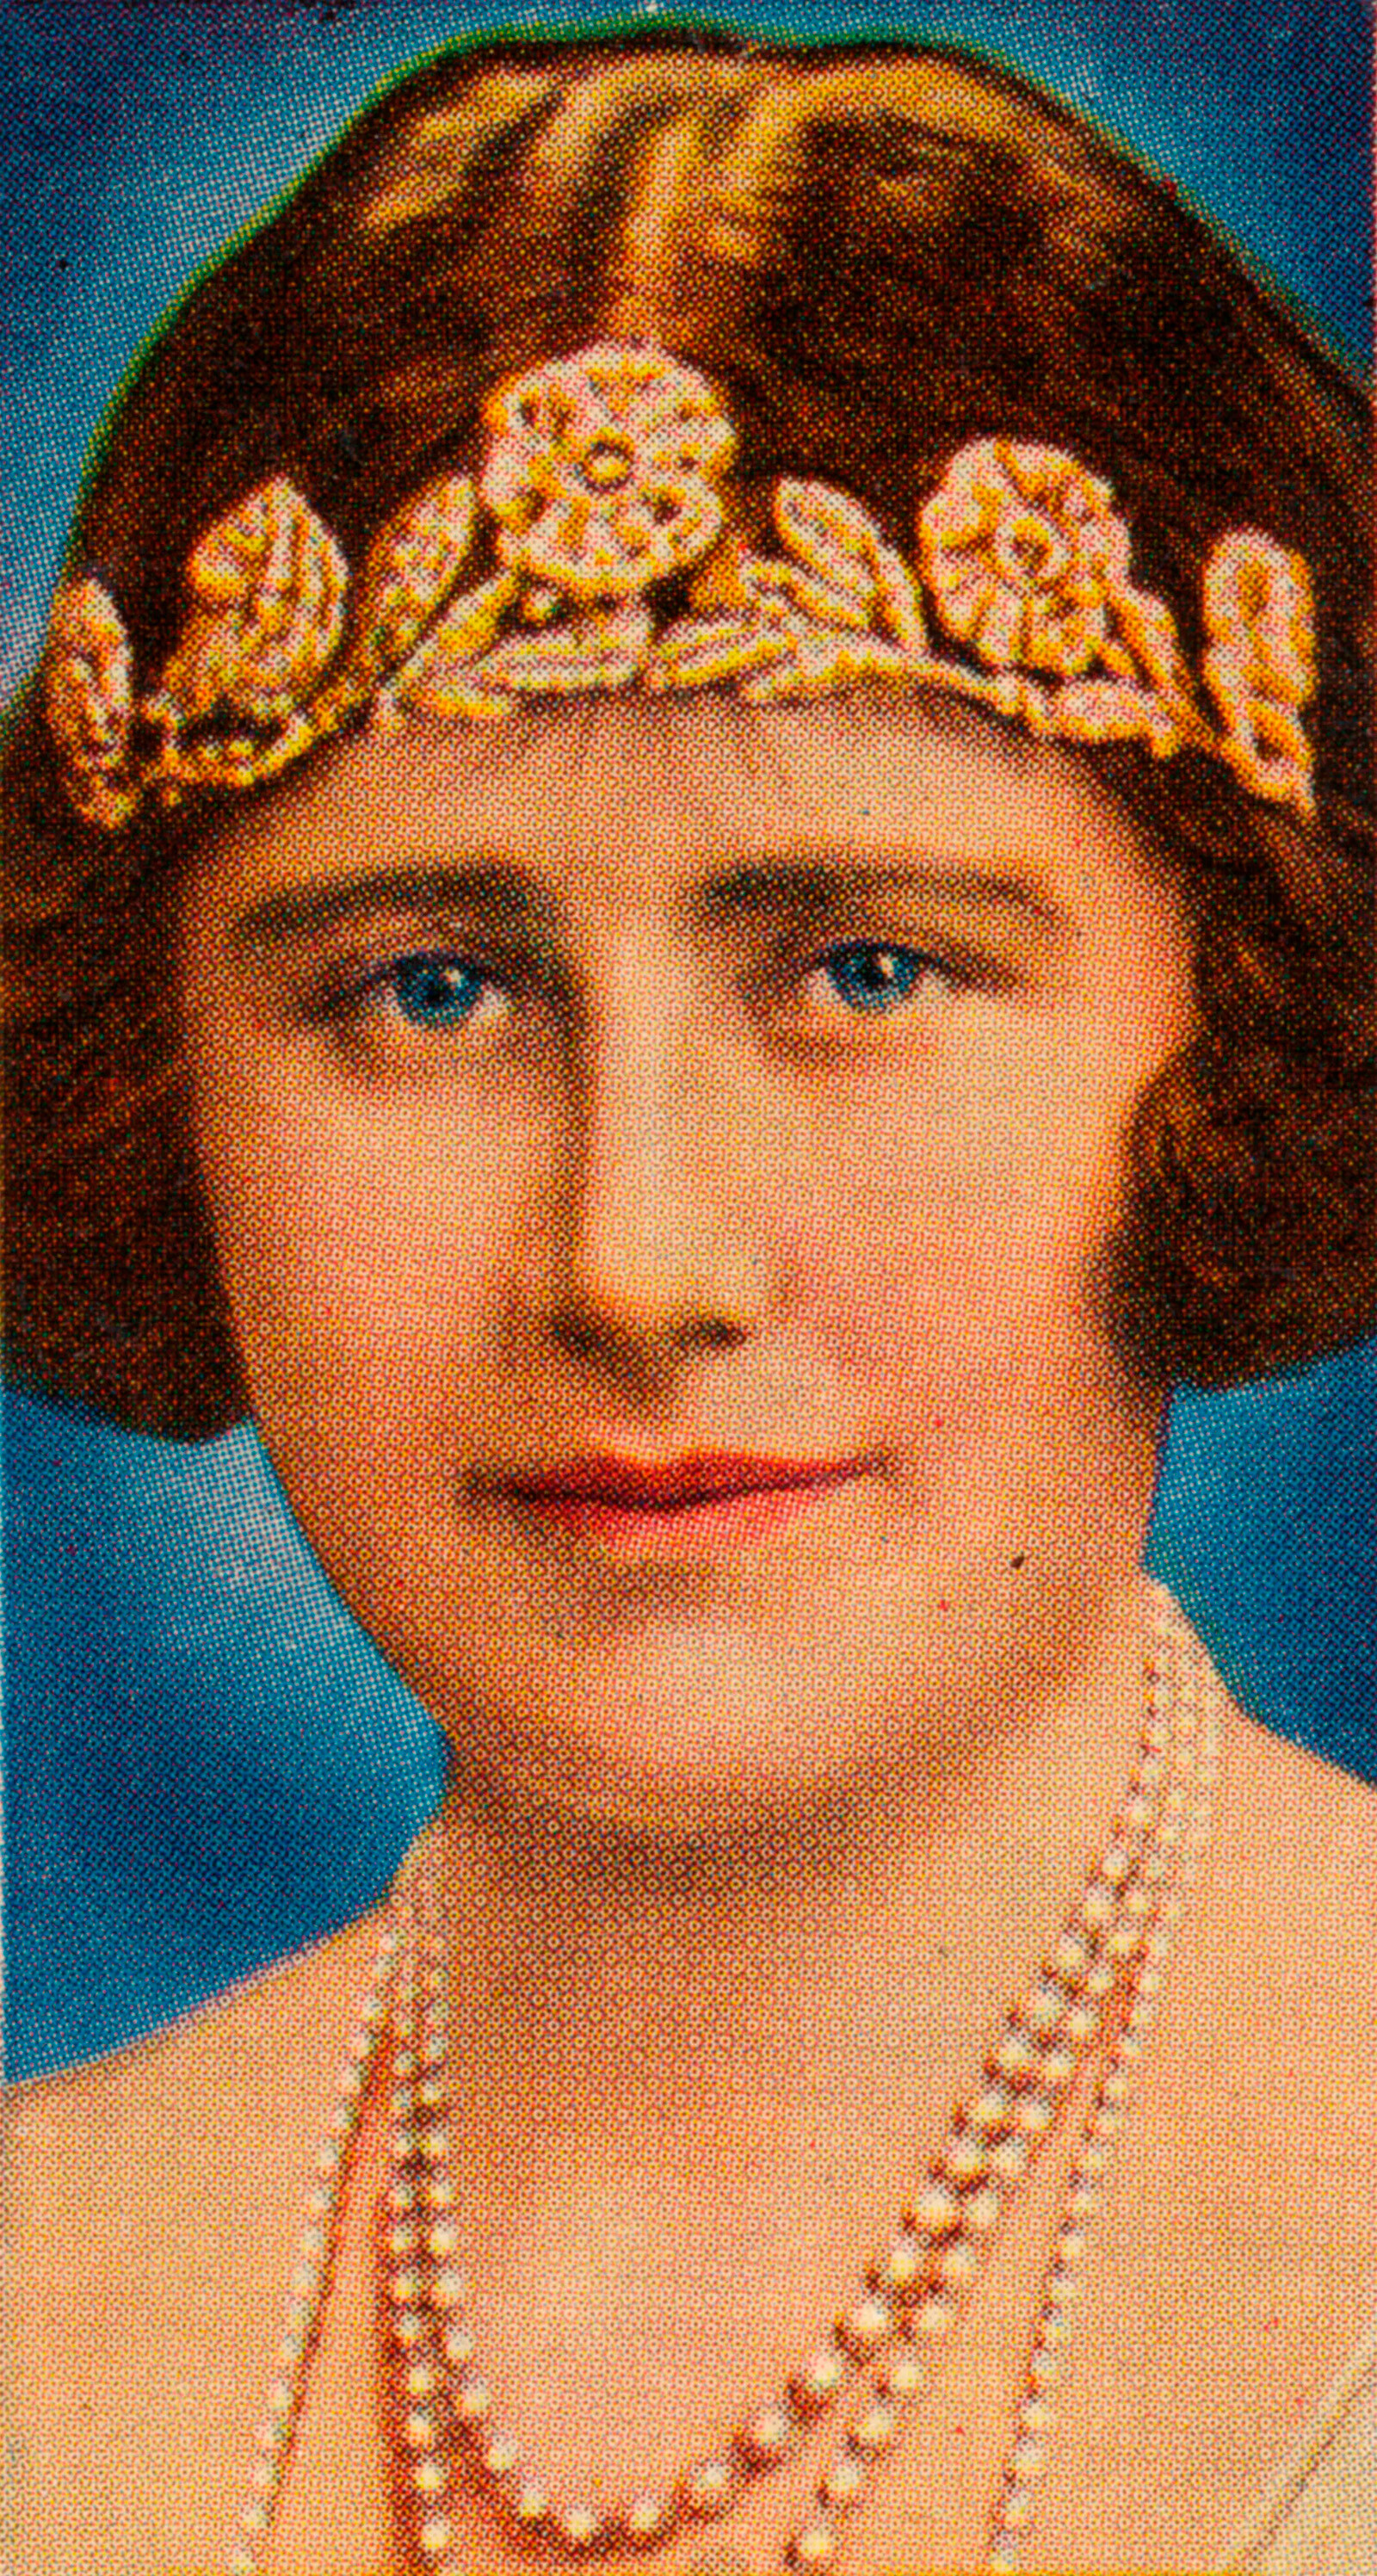 Королева-мать&nbsp;предпочитала носить тиару&nbsp;Strathmore Rose в качестве повязки на голову&nbsp;